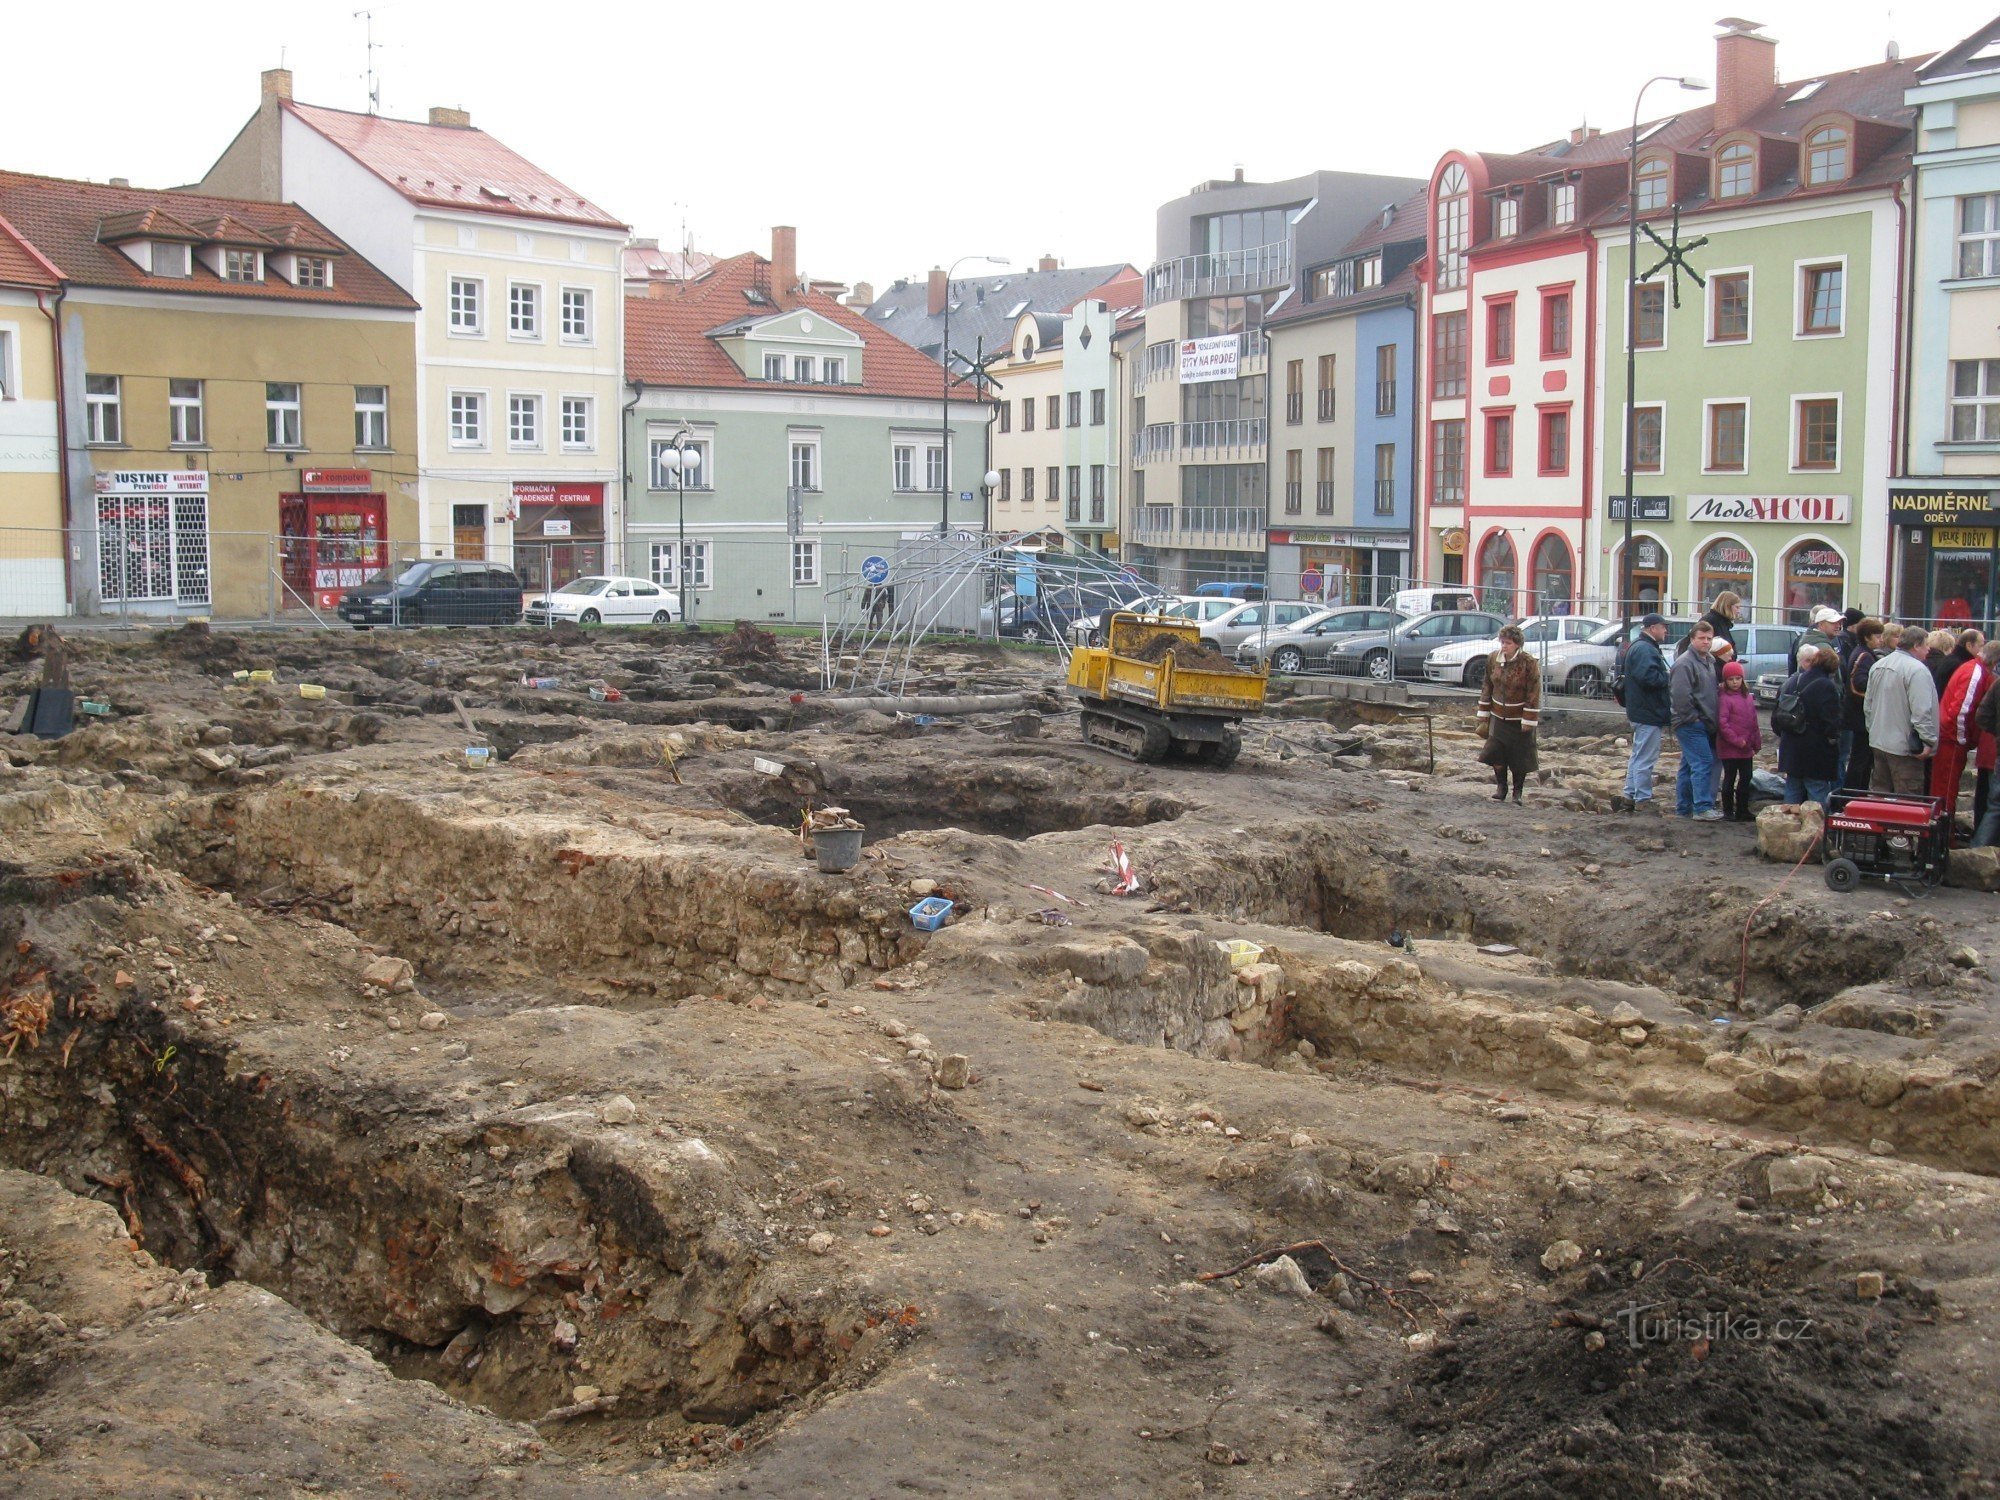 Régészeti leletek Mladá Boleslavban